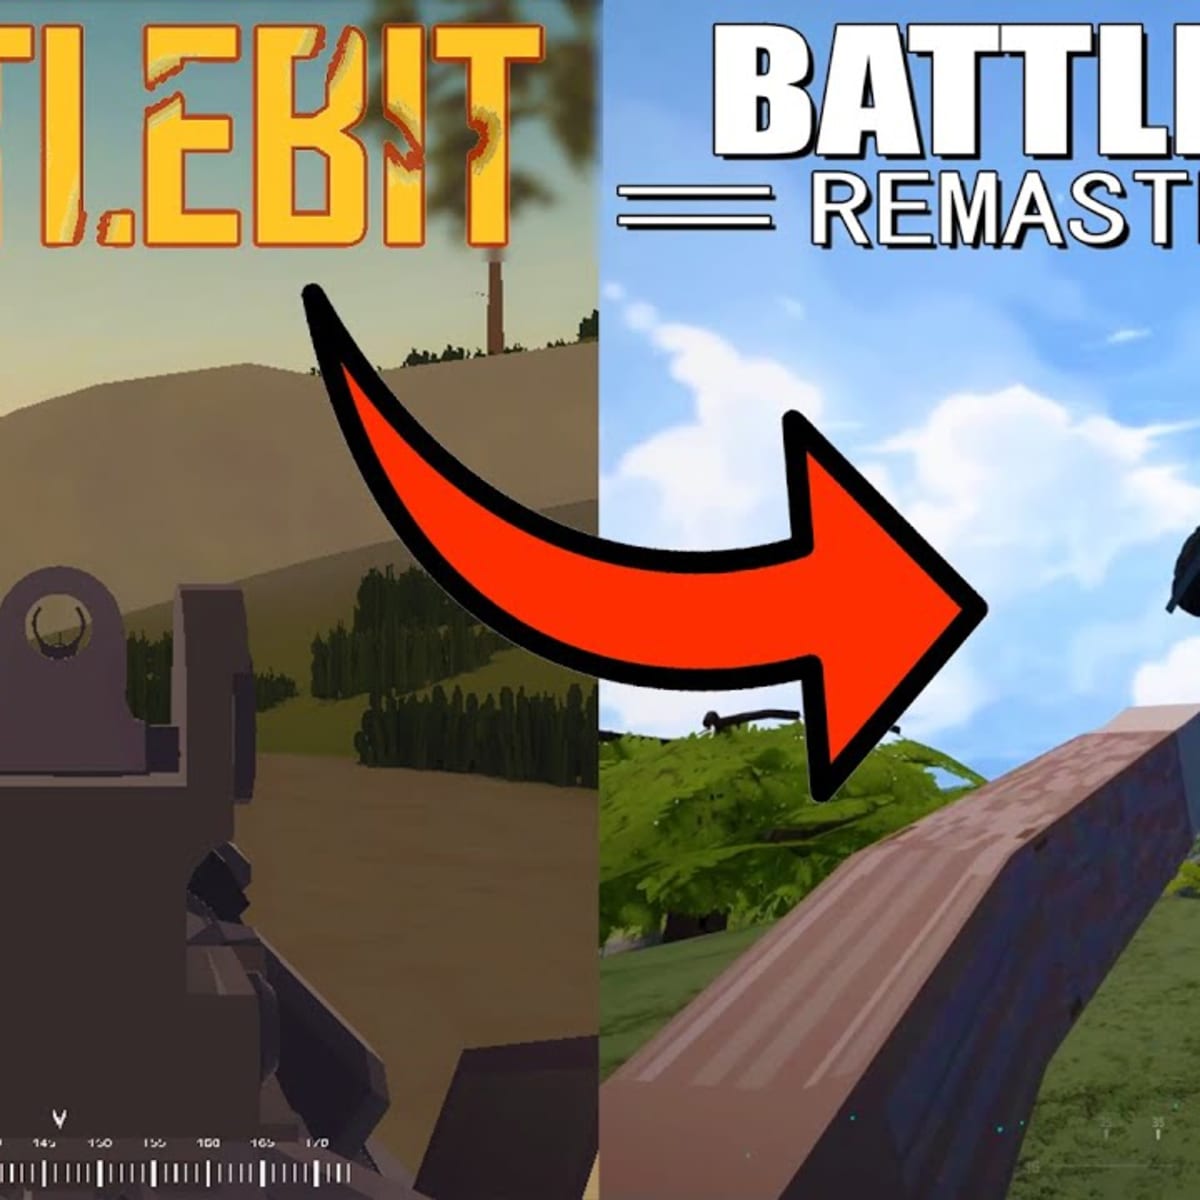 3 People Made A Better Battlefield Game - BattleBit Remastered